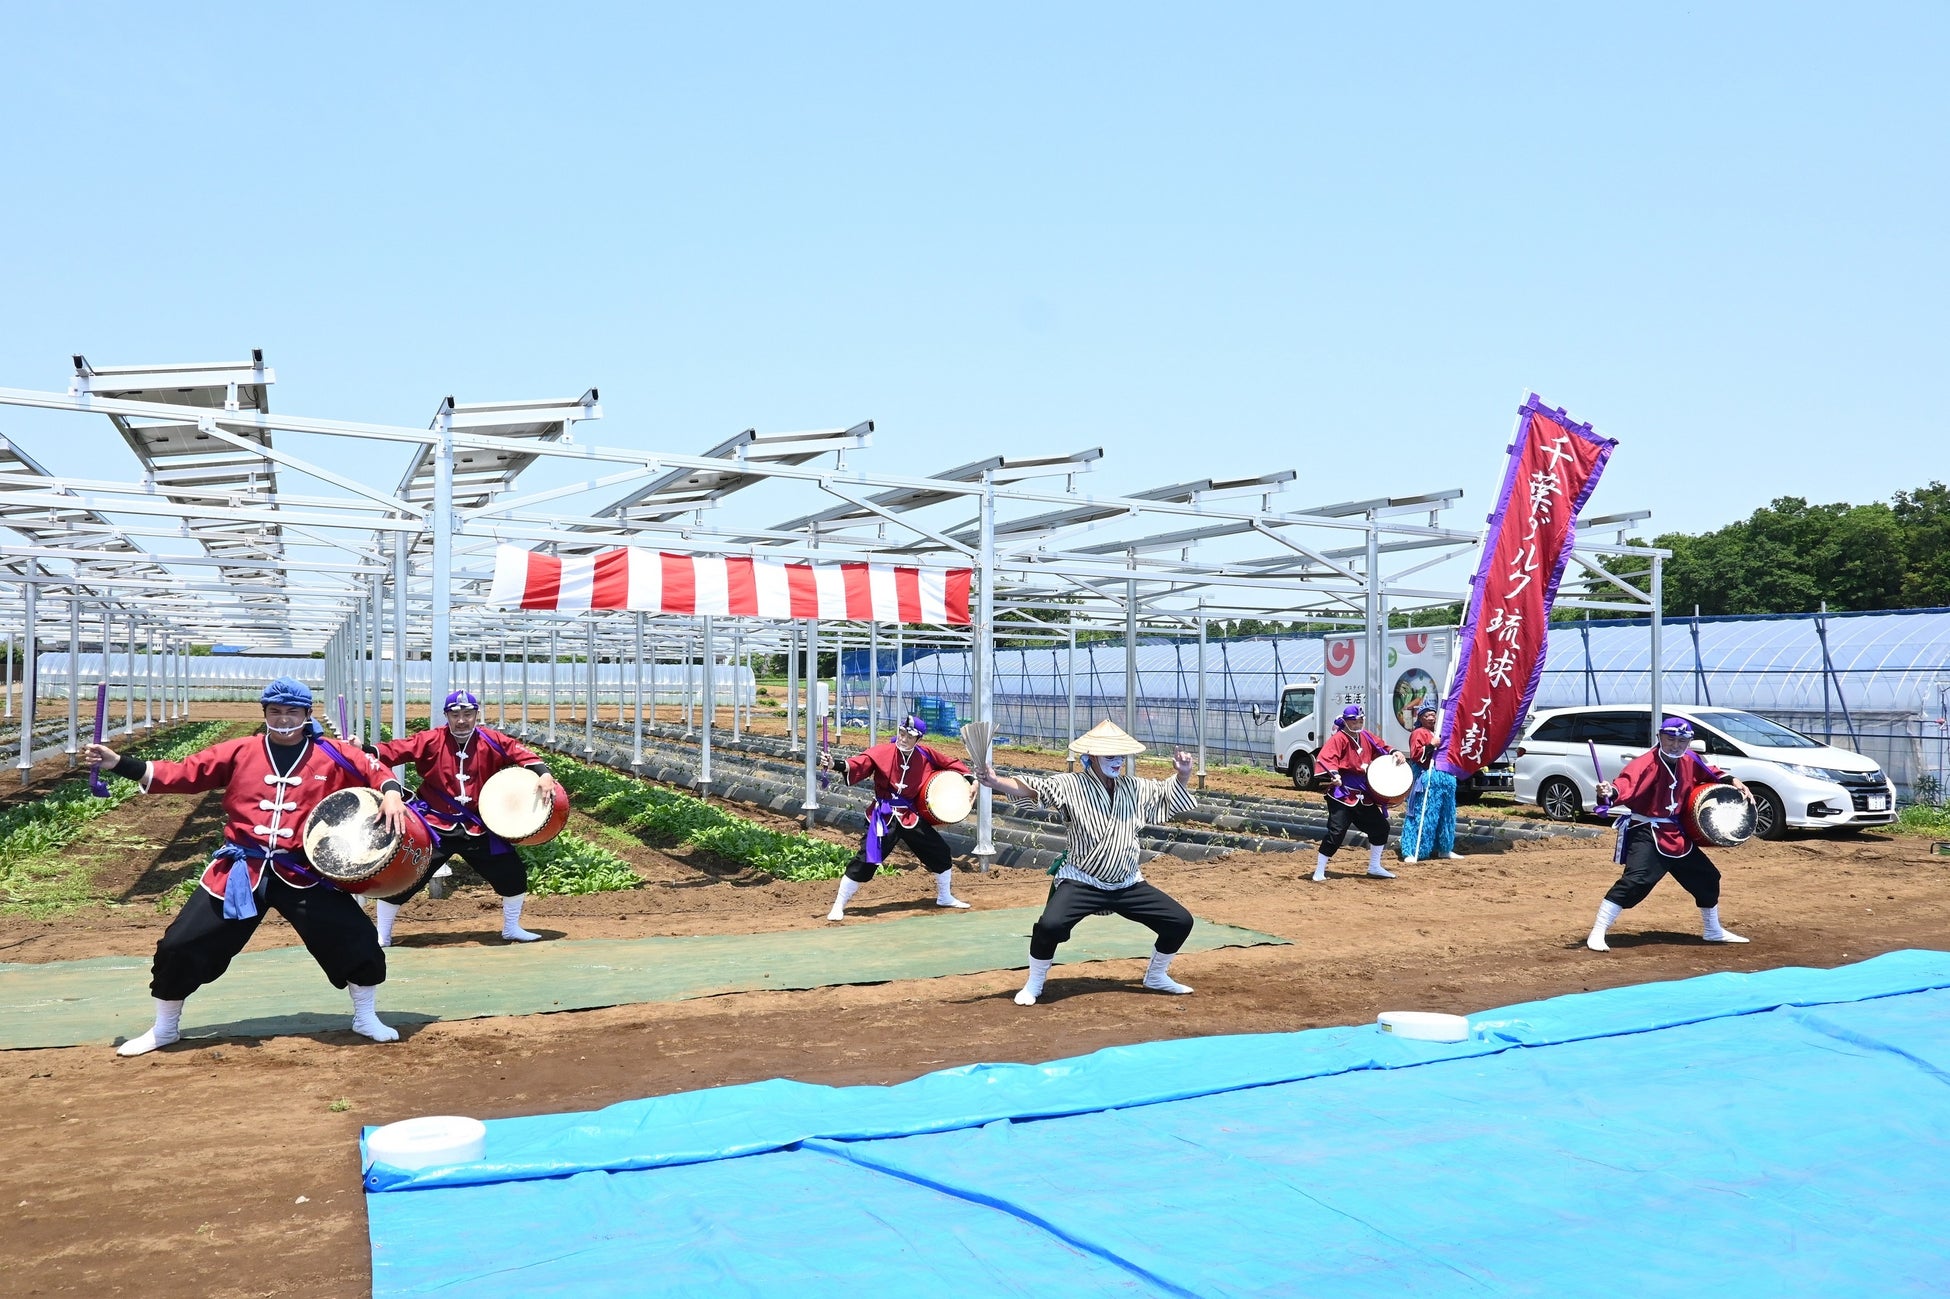 「生活クラブ・虹と風のファーム」 （千葉県八街市）にて営農型太陽光発電設備オープニングセレモニーを開催のサブ画像3_農業指導などで関わりのある千葉ダルクによるエイサーの演舞